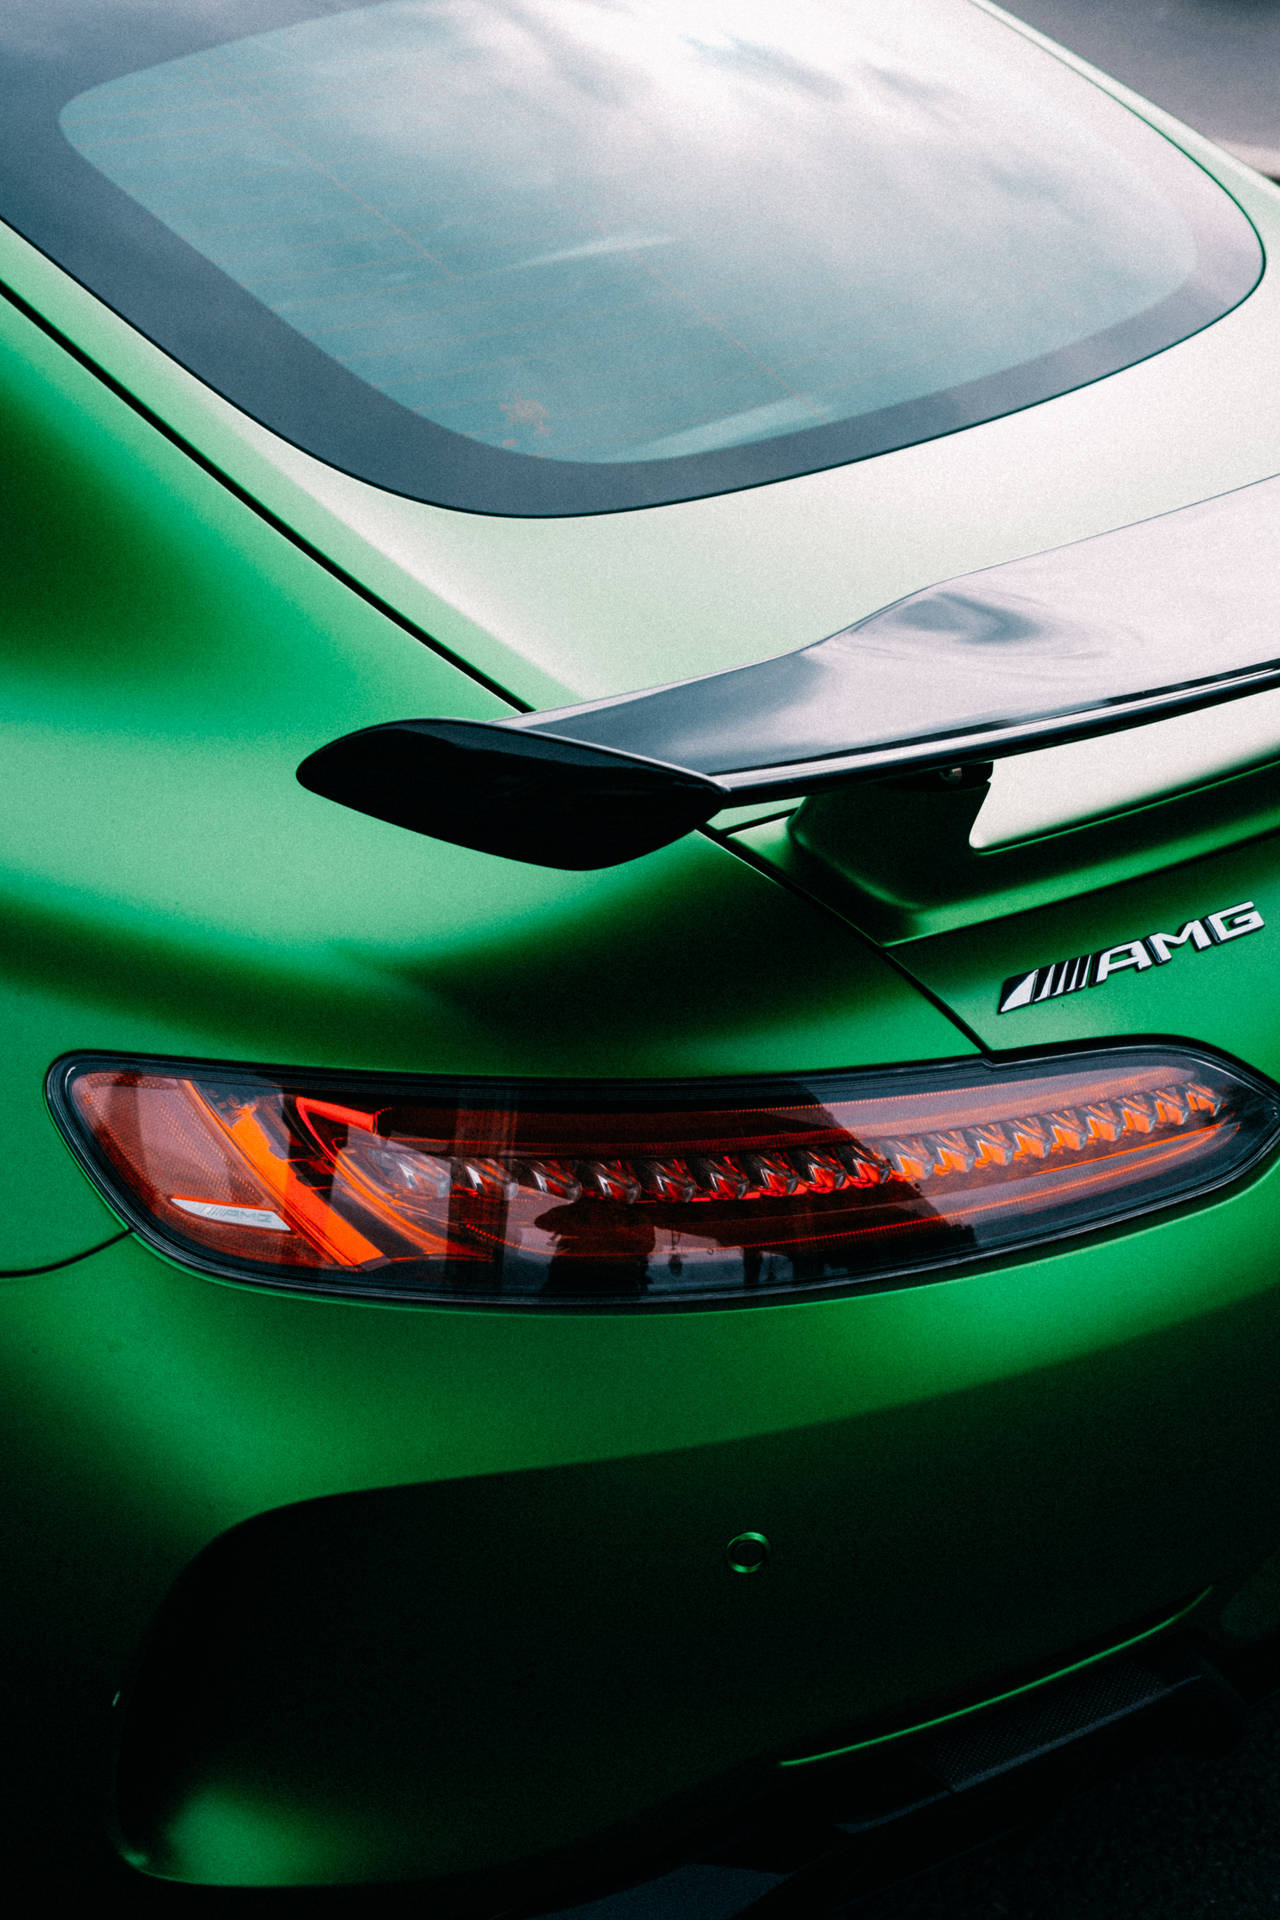 Green Mercedes-Benz AMG Wallpaper